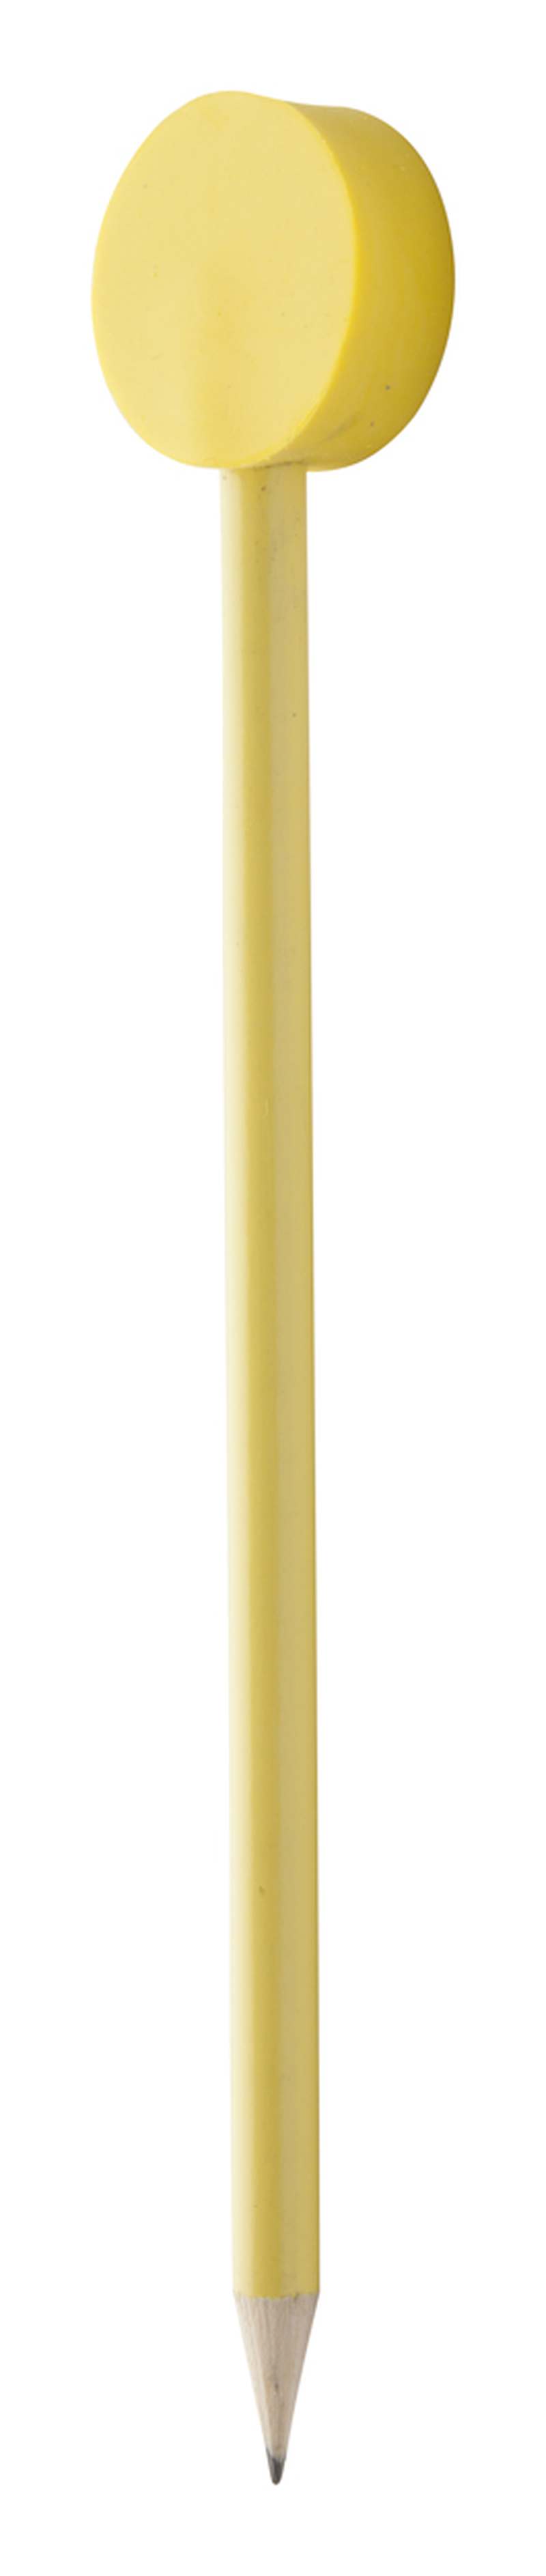 Tužka Harpo